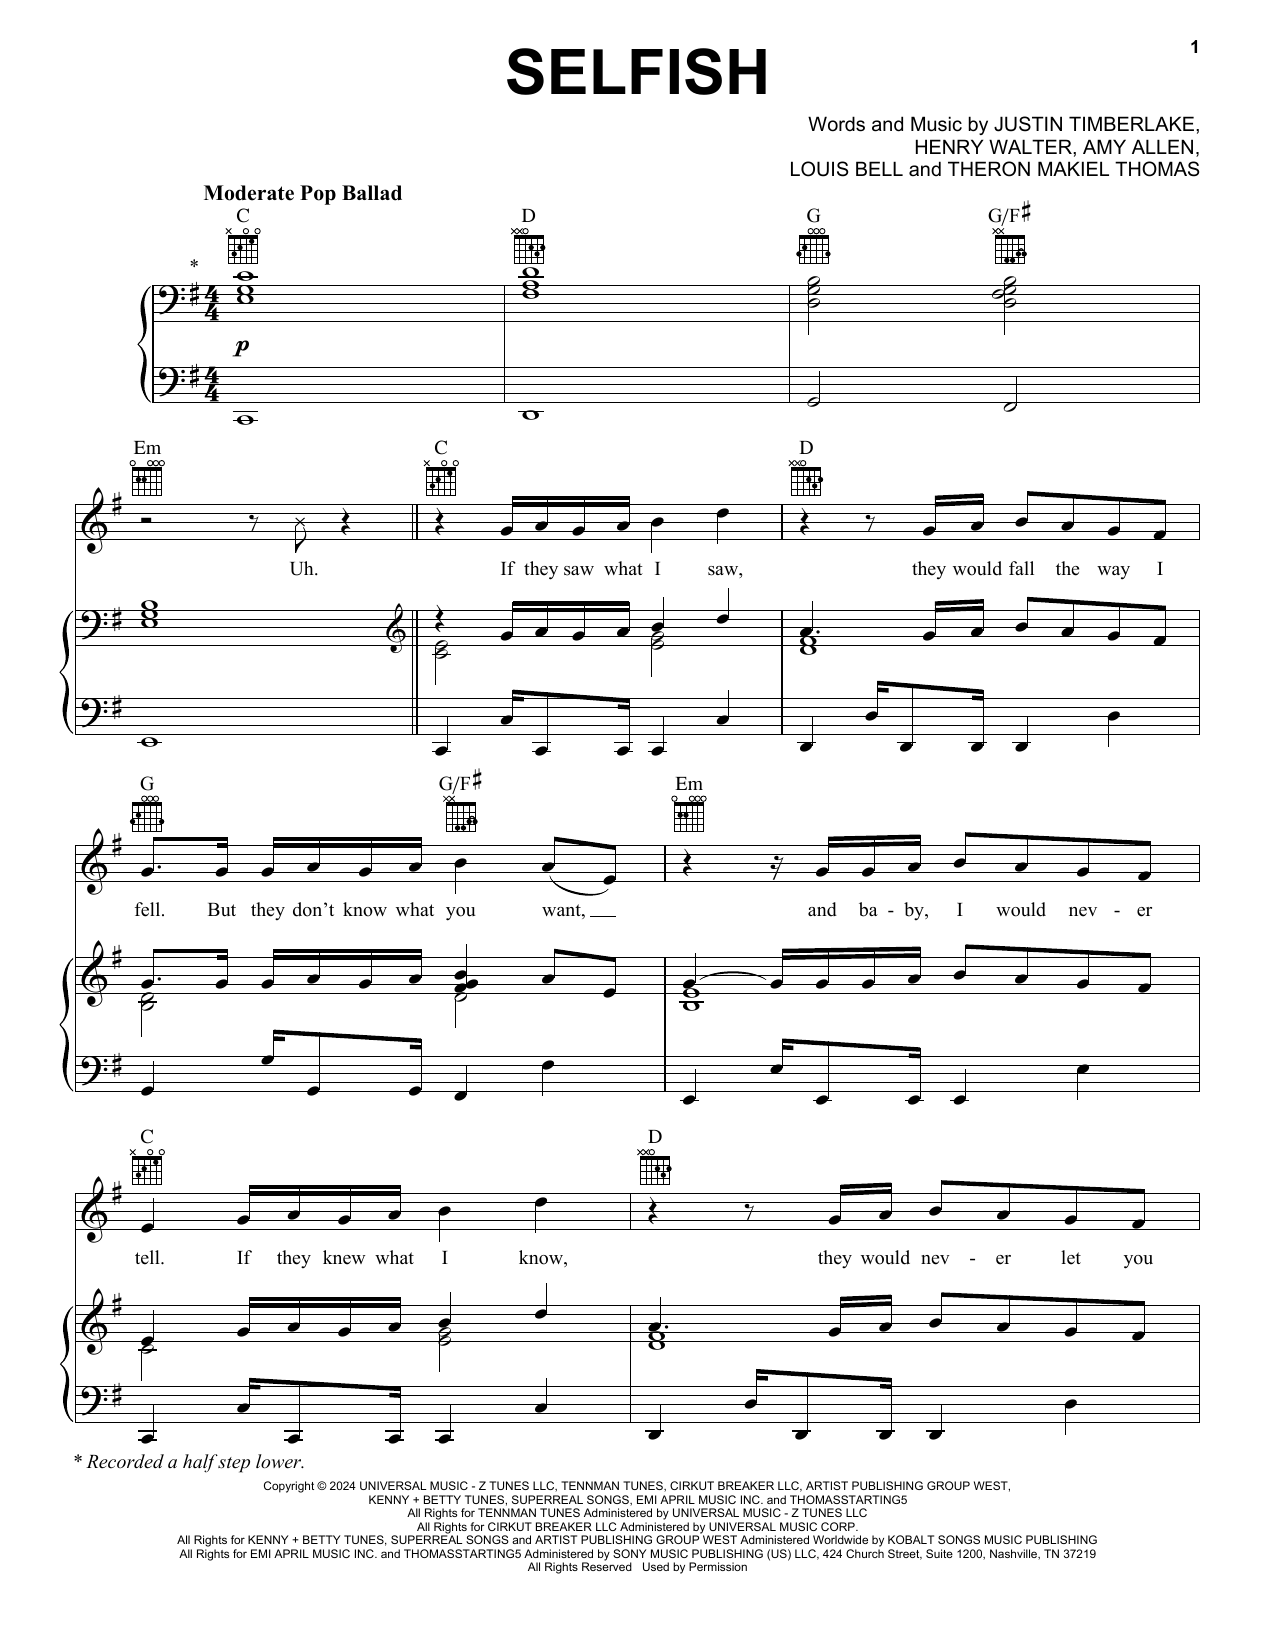 Justin Timberlake Selfish sheet music notes printable PDF score